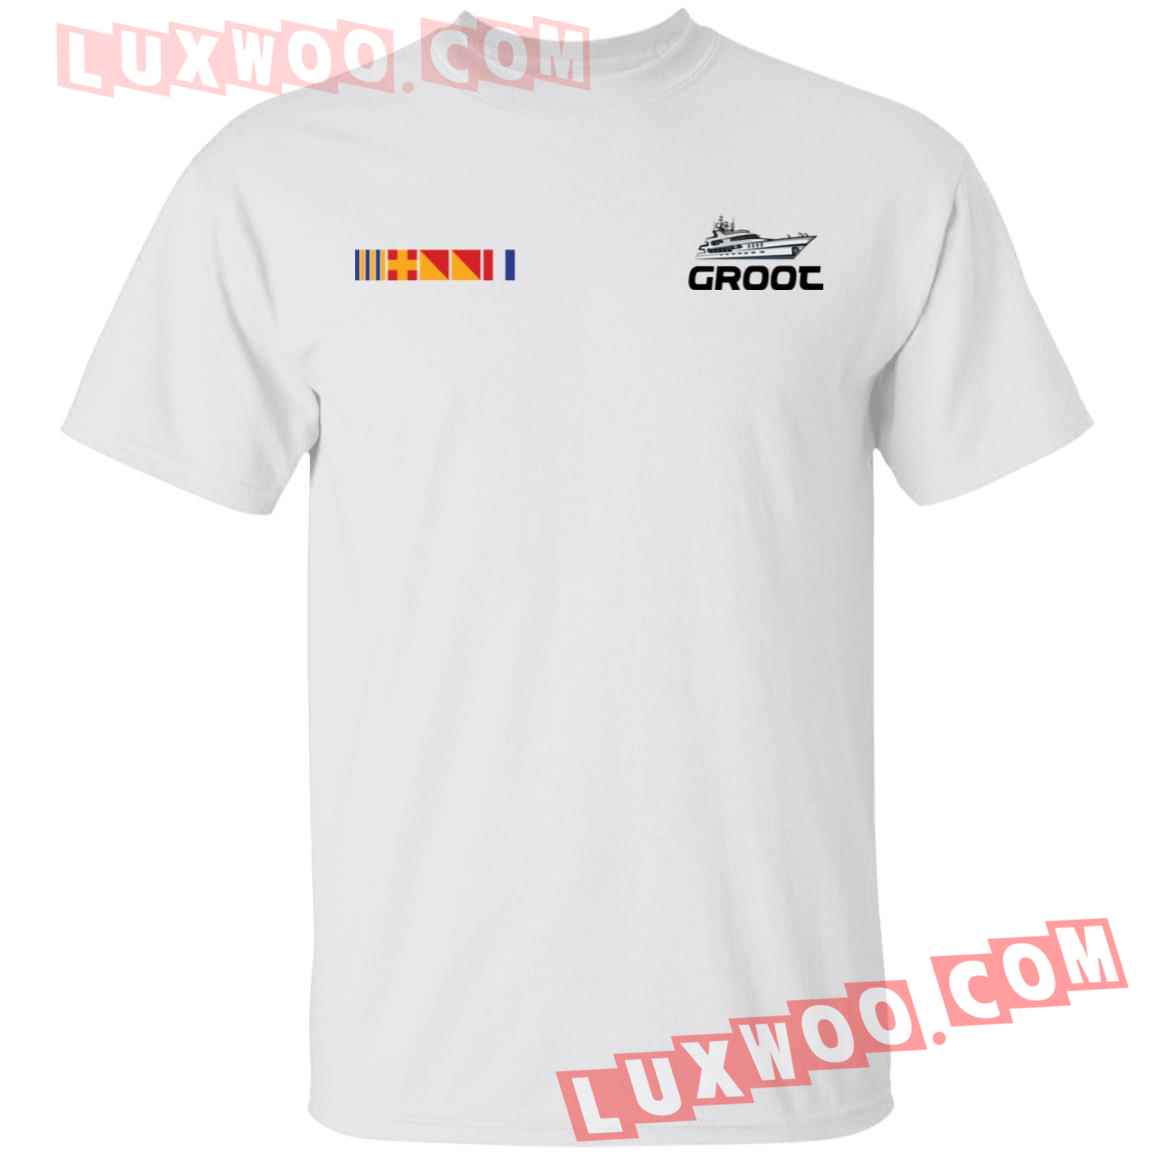 Groot Yacht Shirt - Luxwoo.com